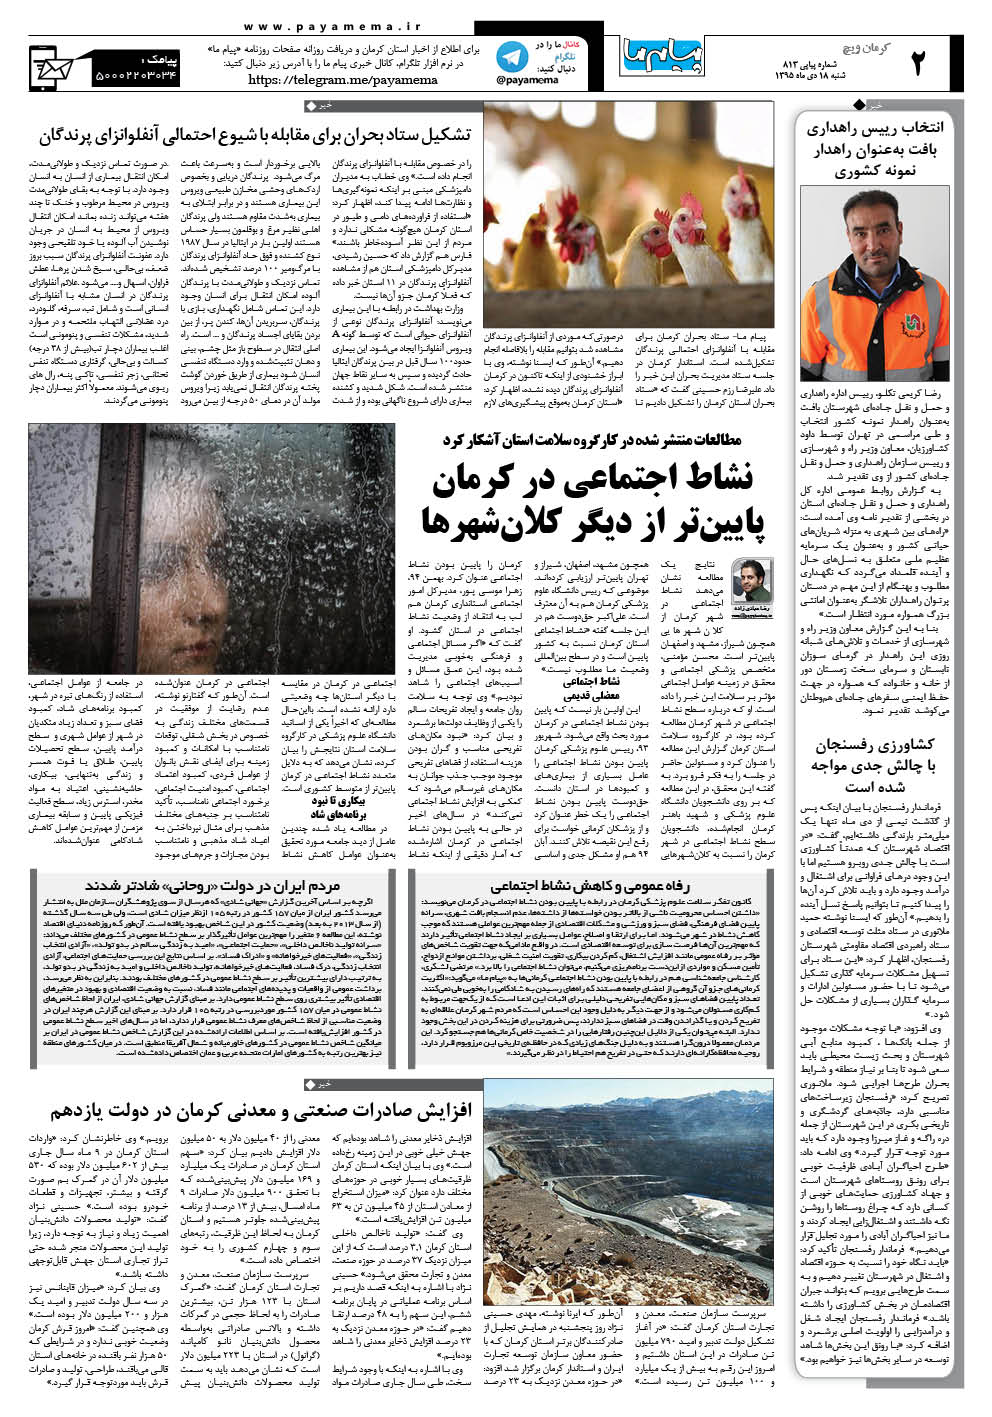 صفحه کرمان ویچ شماره 813 روزنامه پیام ما